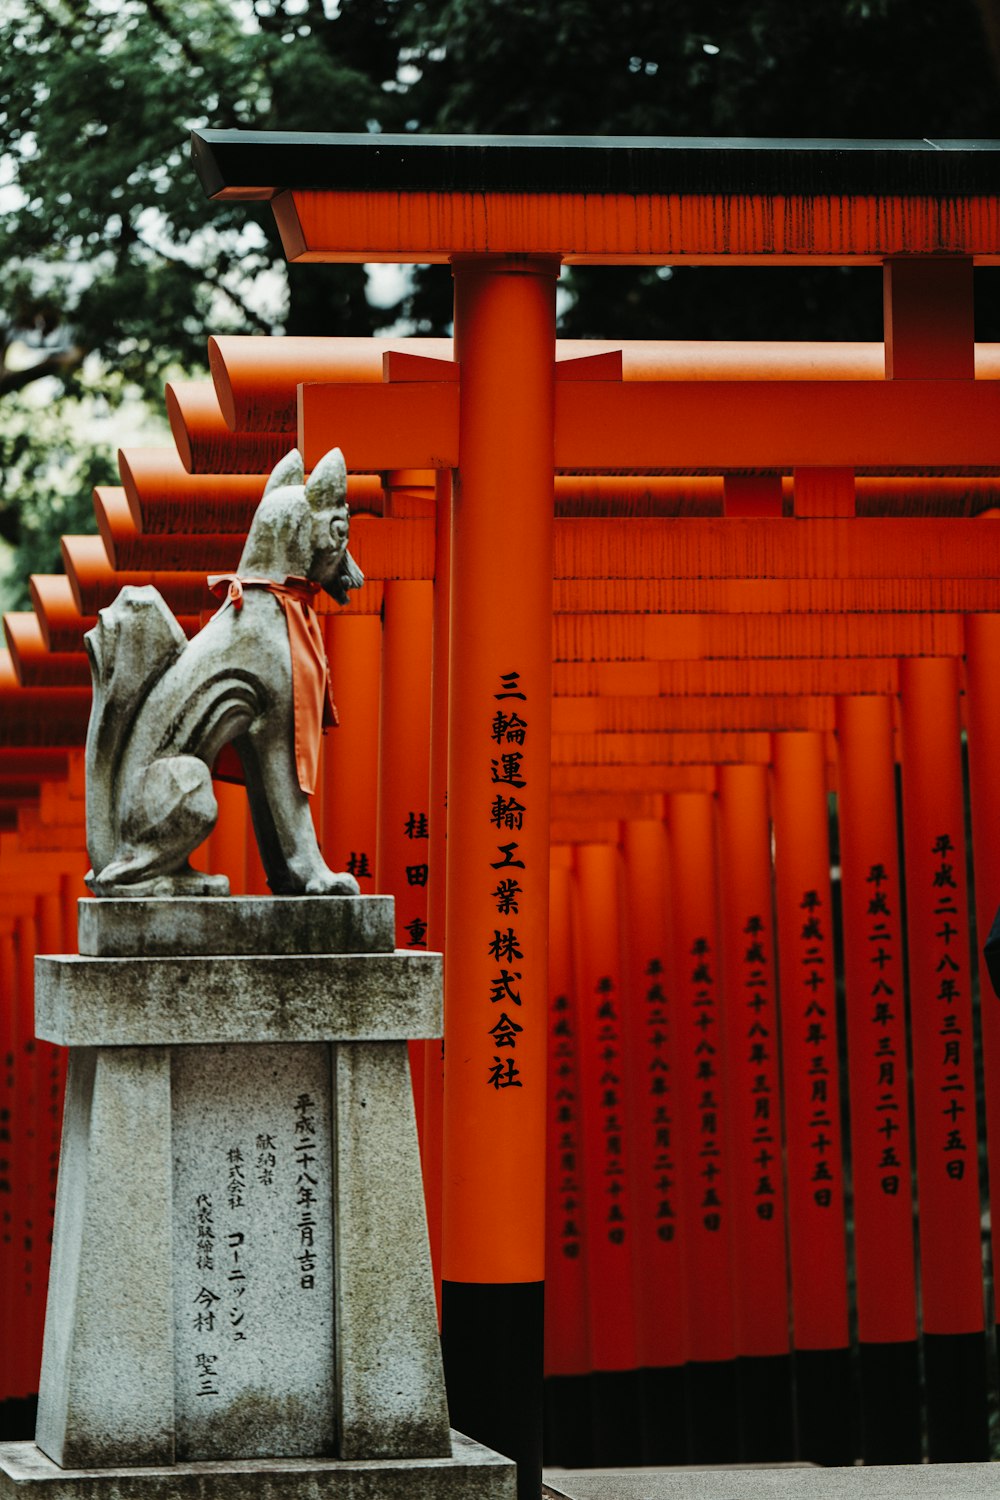 a statue of a dog in front of a row of red tori tori tori tori